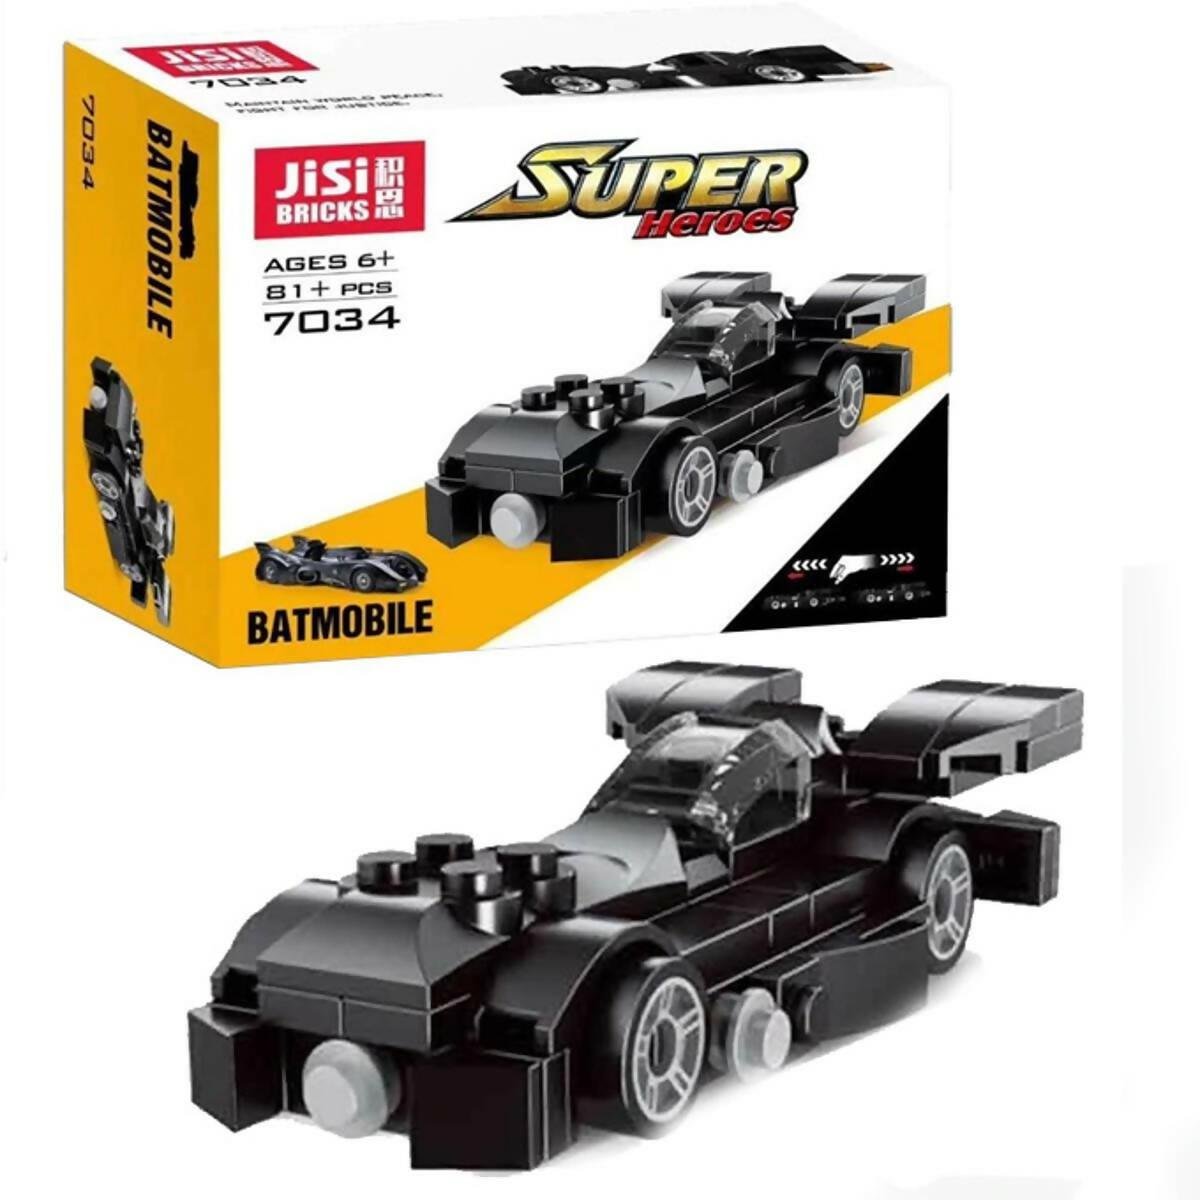 Batman Batmobile Car JISI Bricks Building Blocks - 7034 - ValueBox